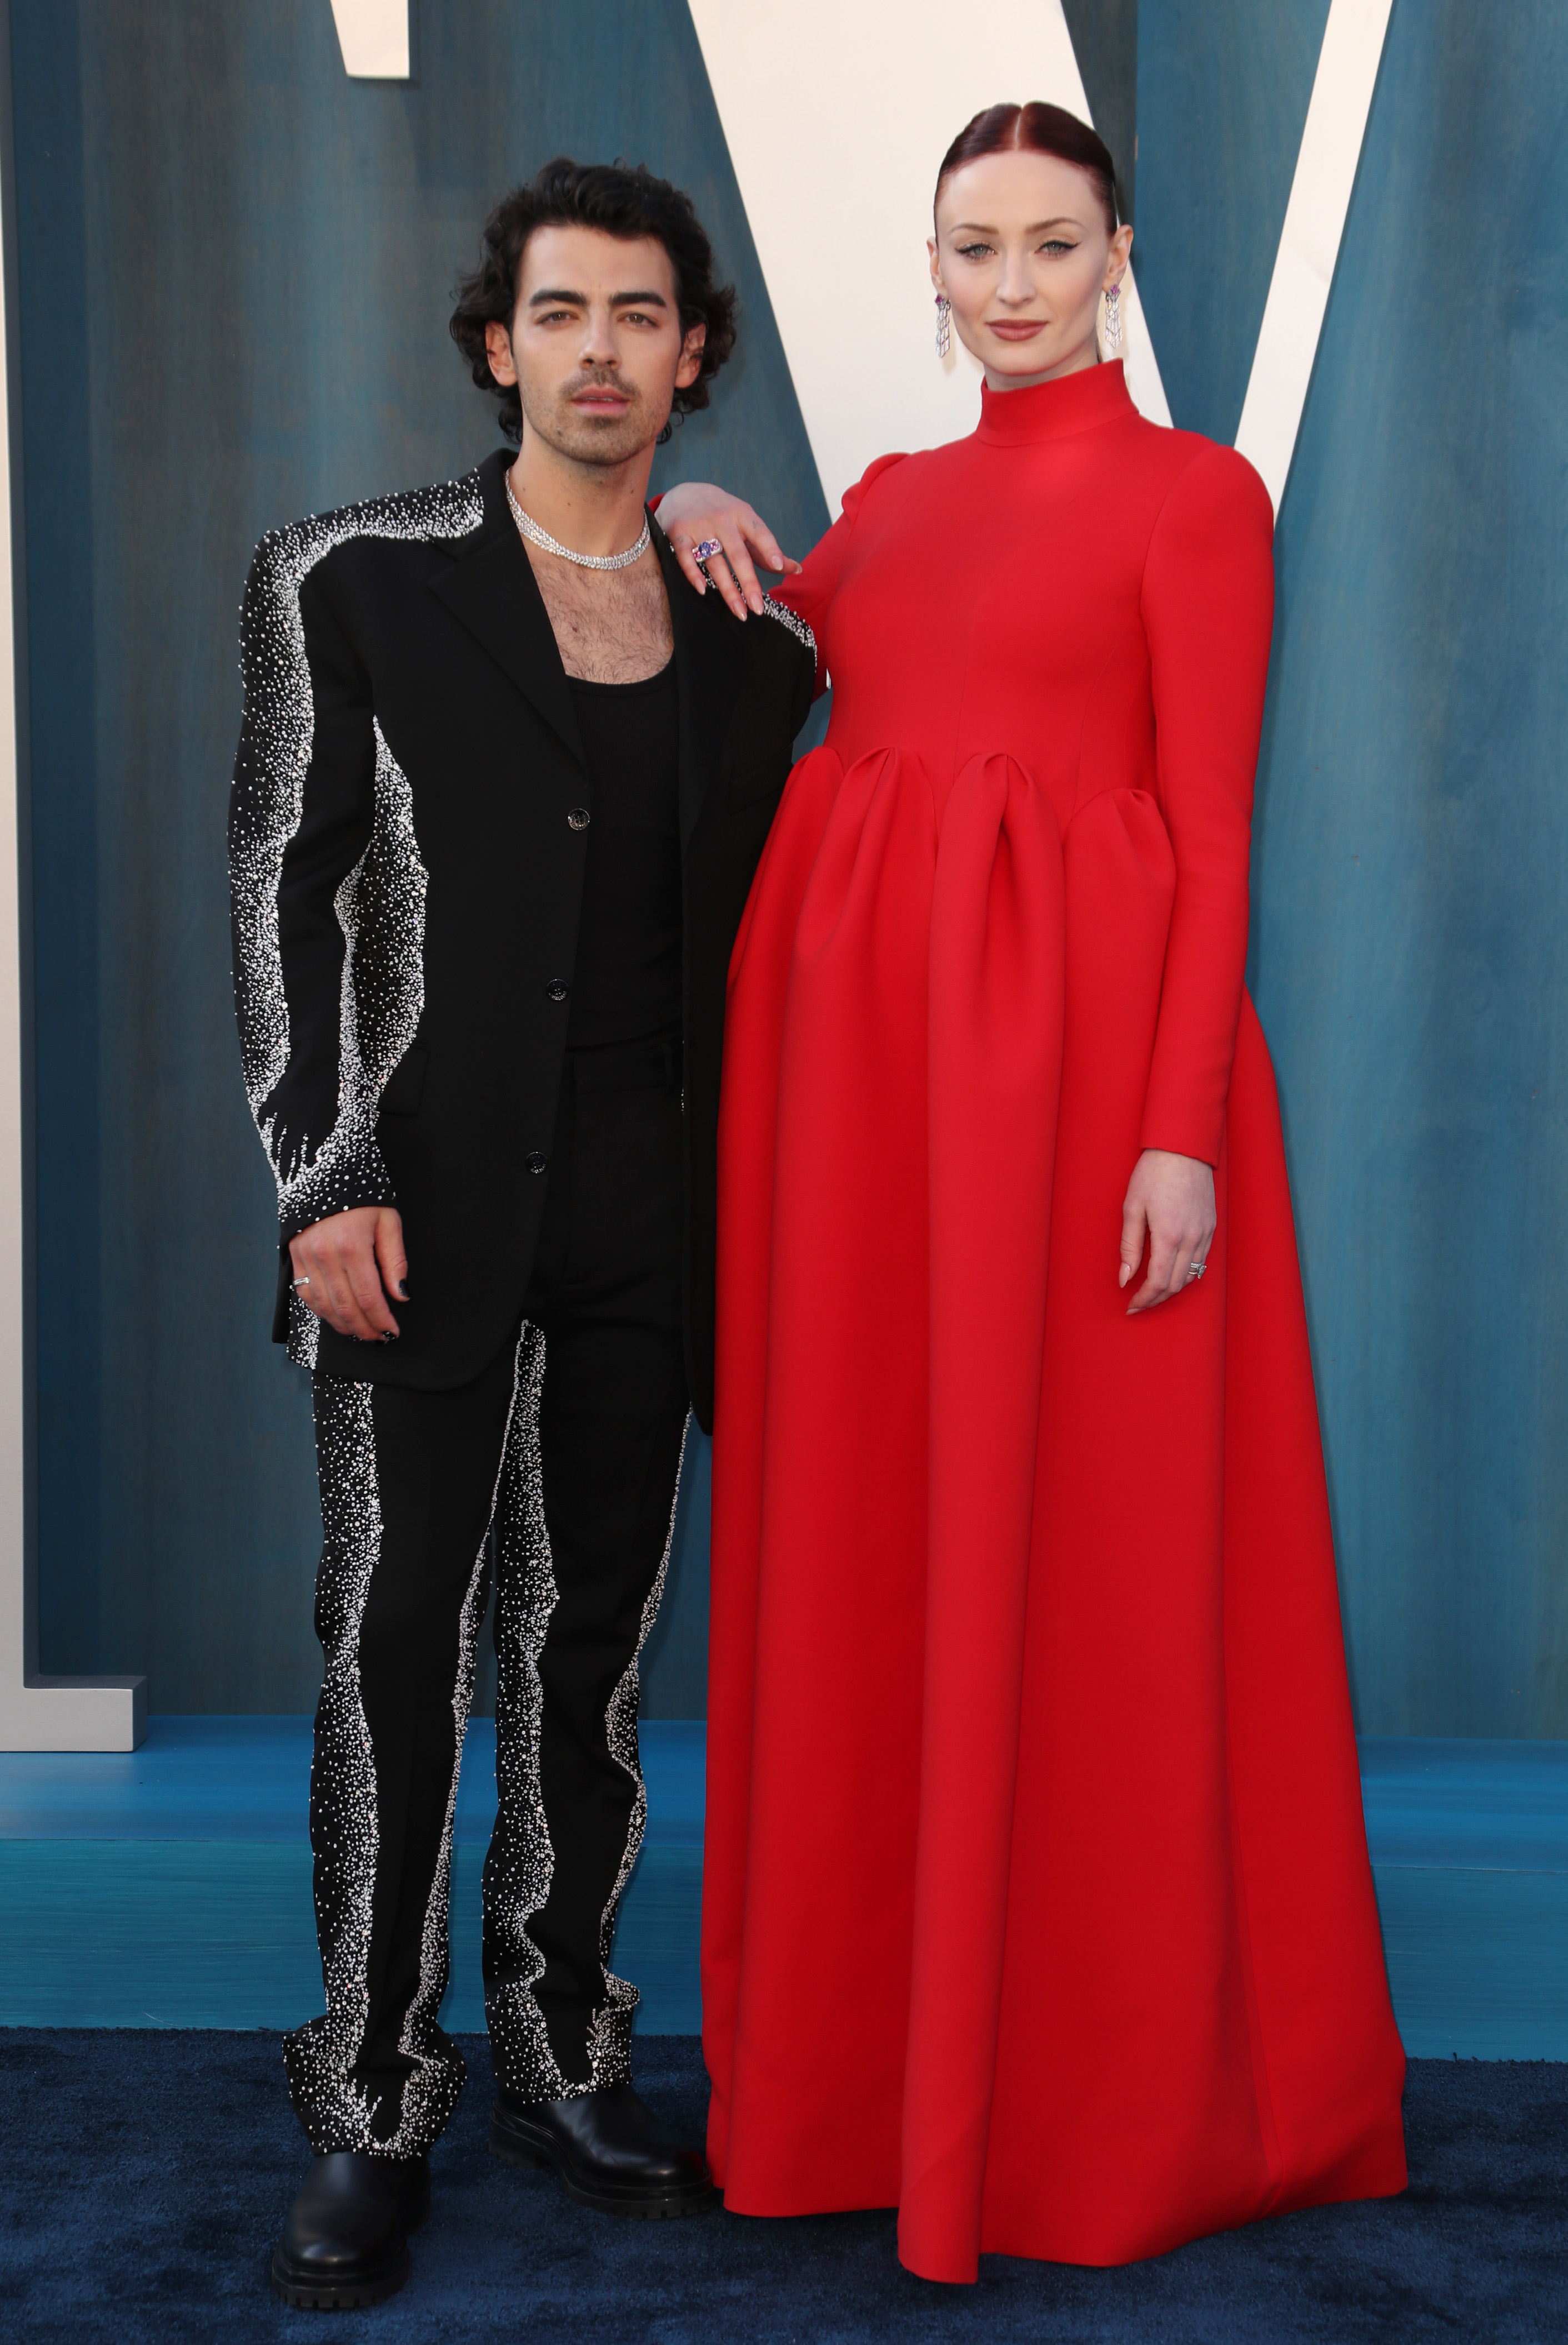 Sophie Turner, Joe Jonas at 2022 Met Gala: Baby Bump Photos